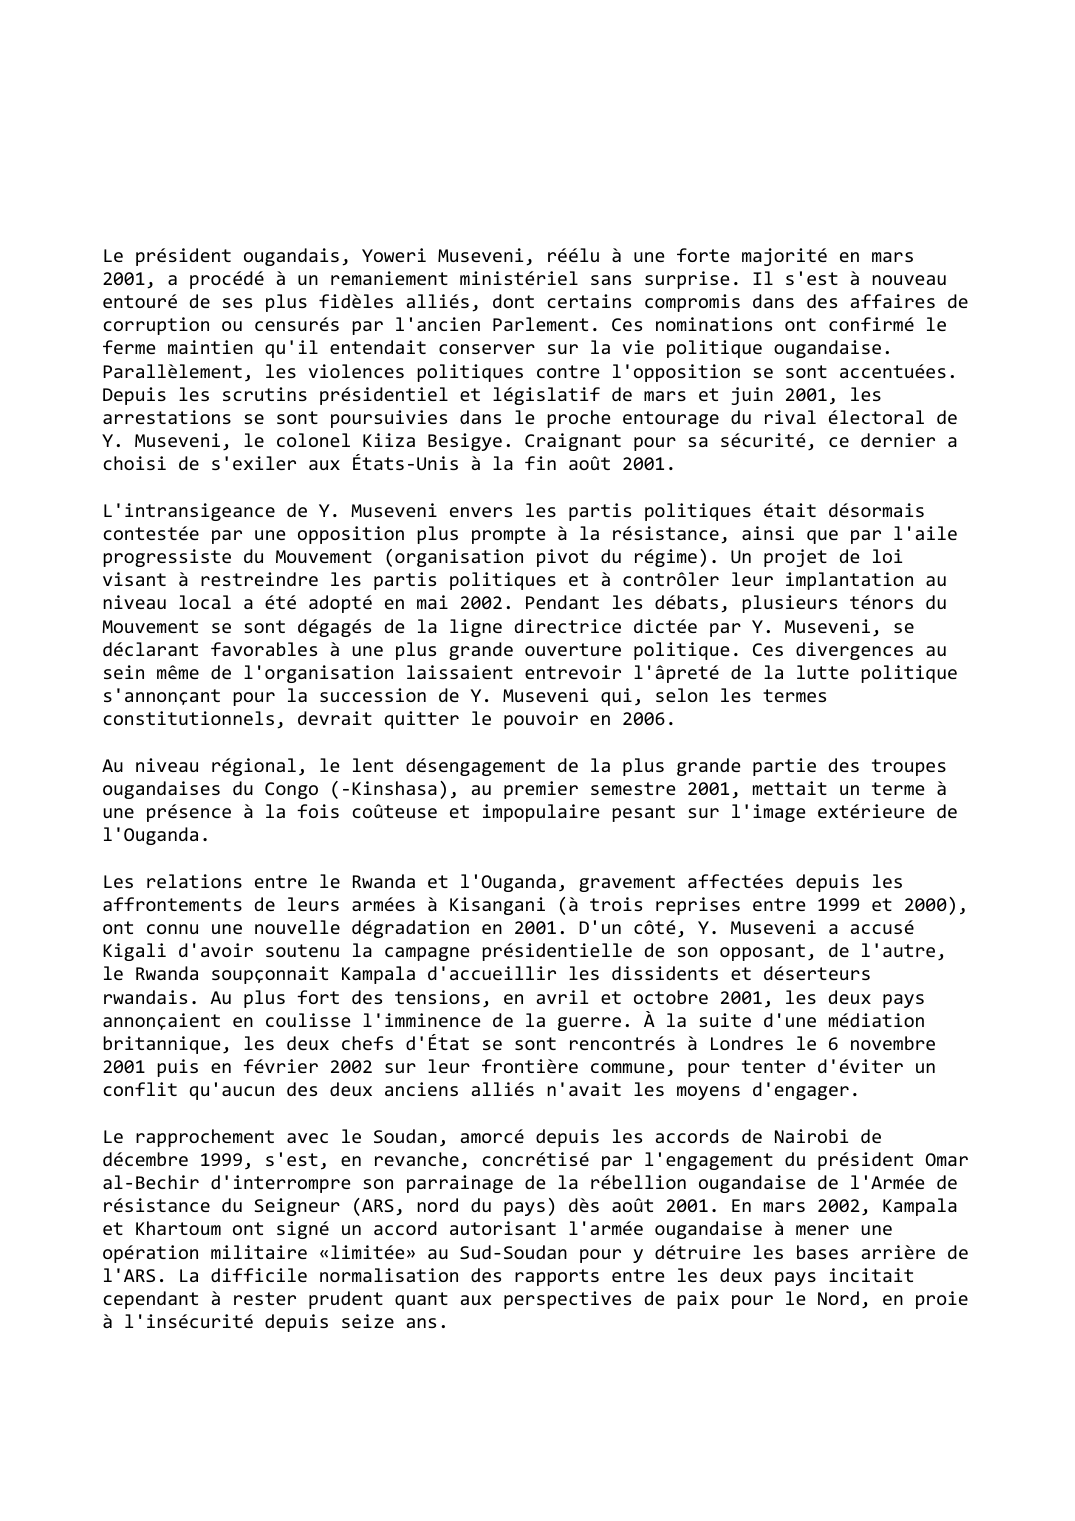 Prévisualisation du document Ouganda (2001-2002)

Verrouillage politique